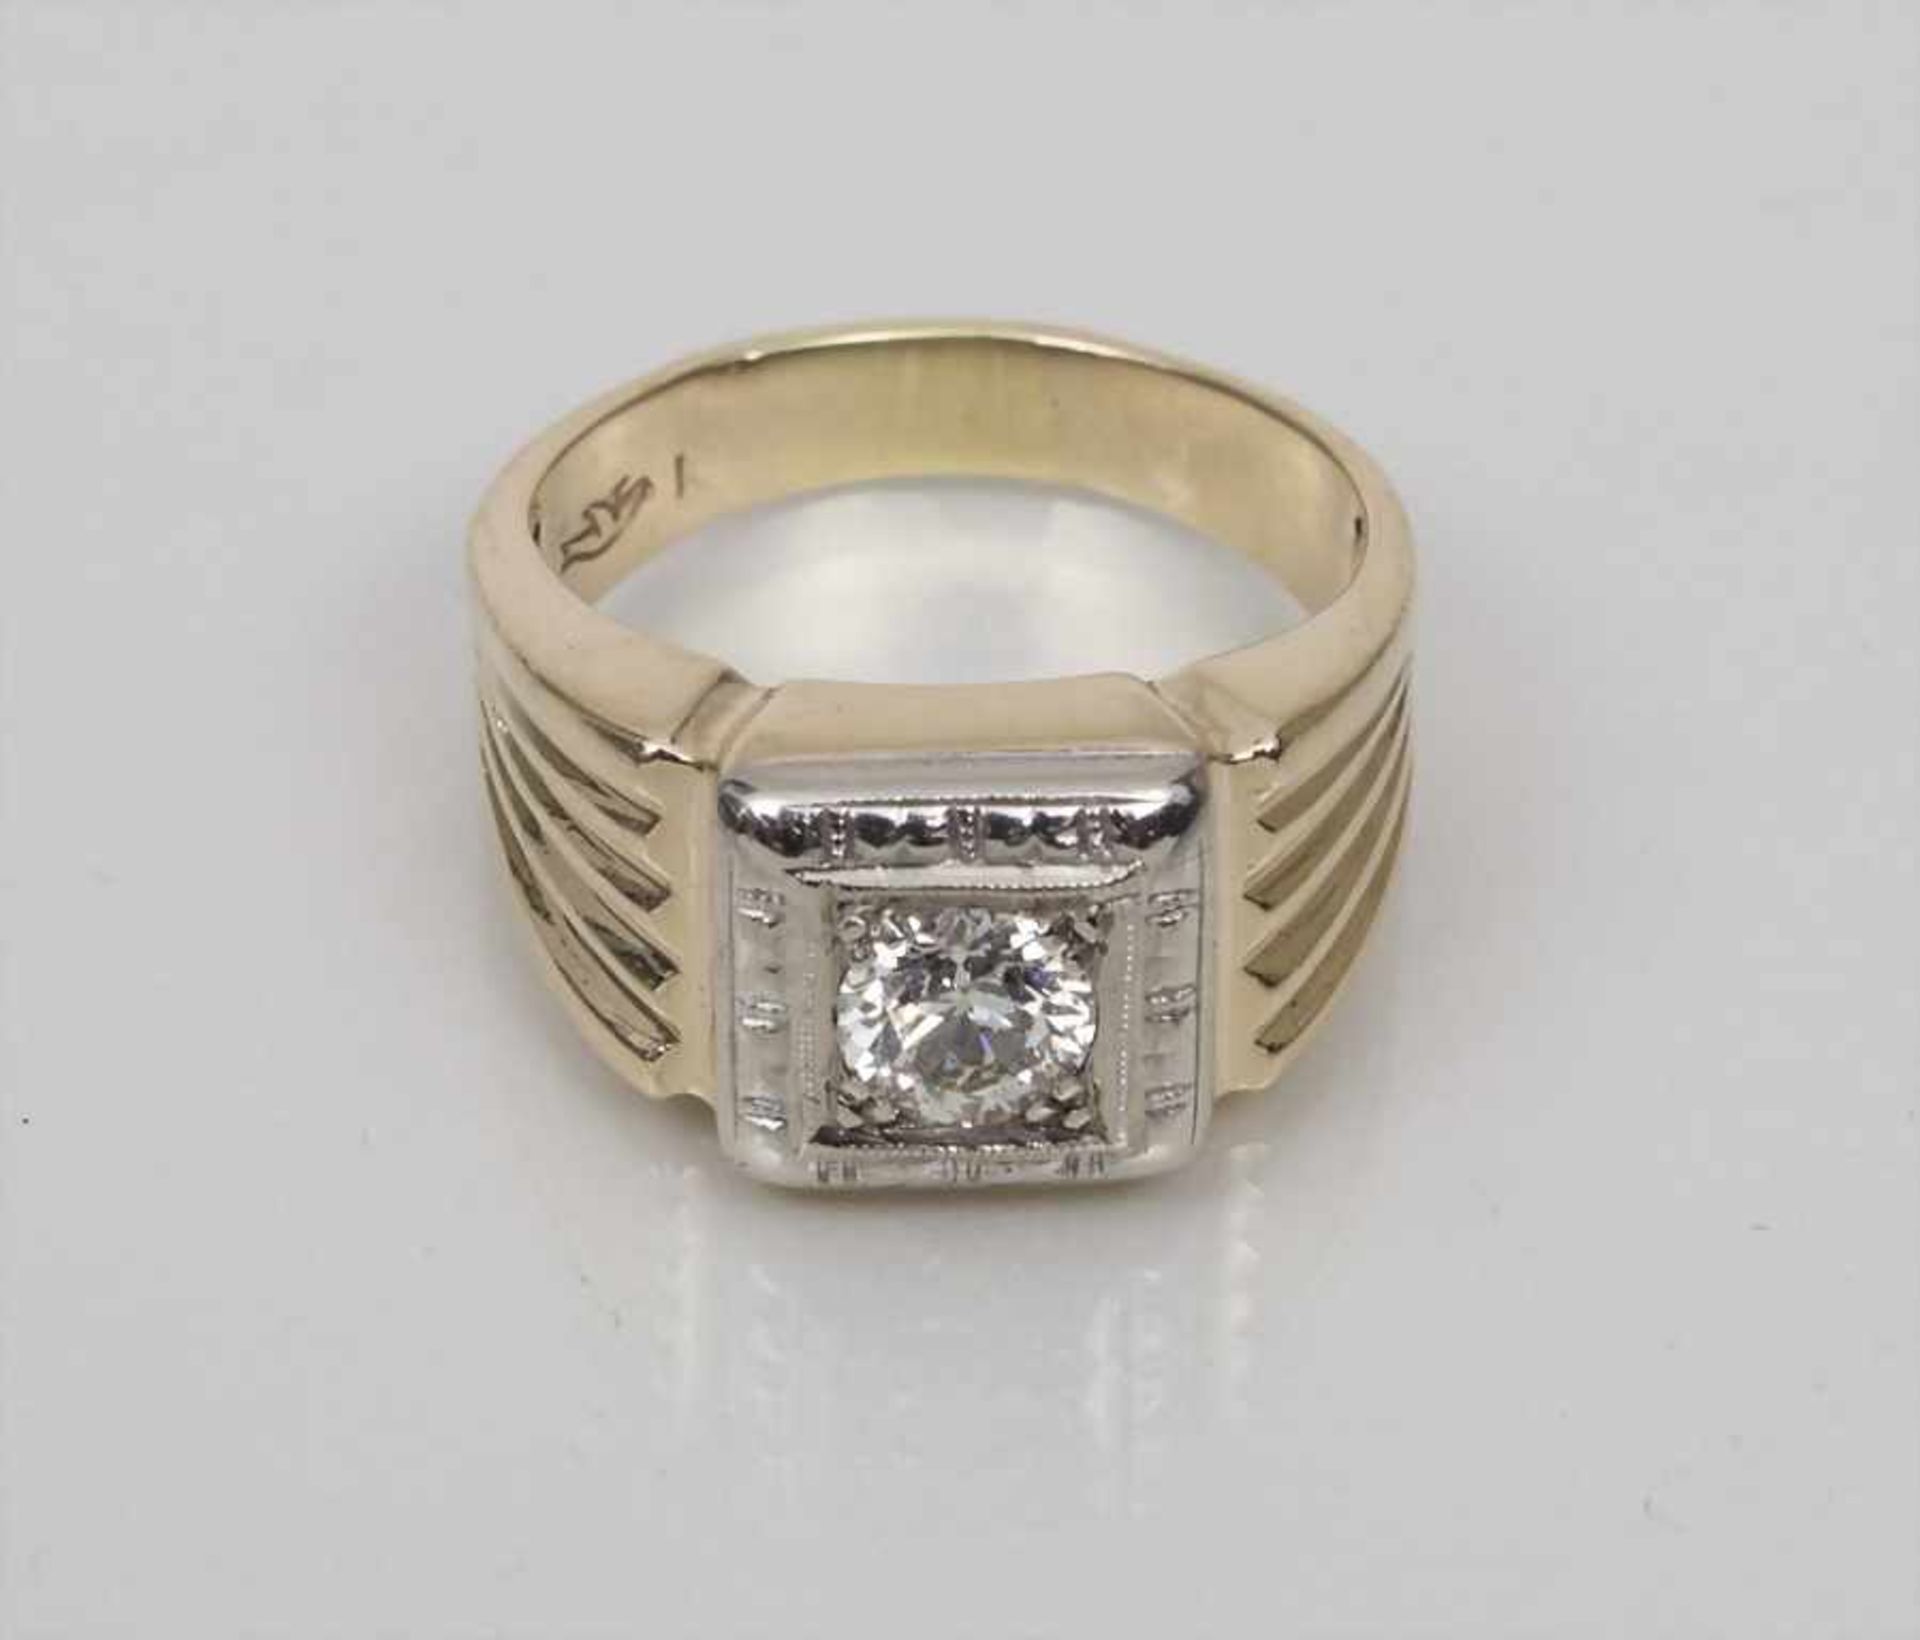 Damenring mit Diamant / A Ladies Ring with Diamond Material: Gelb- und Weißgold 585/000 14 Kt